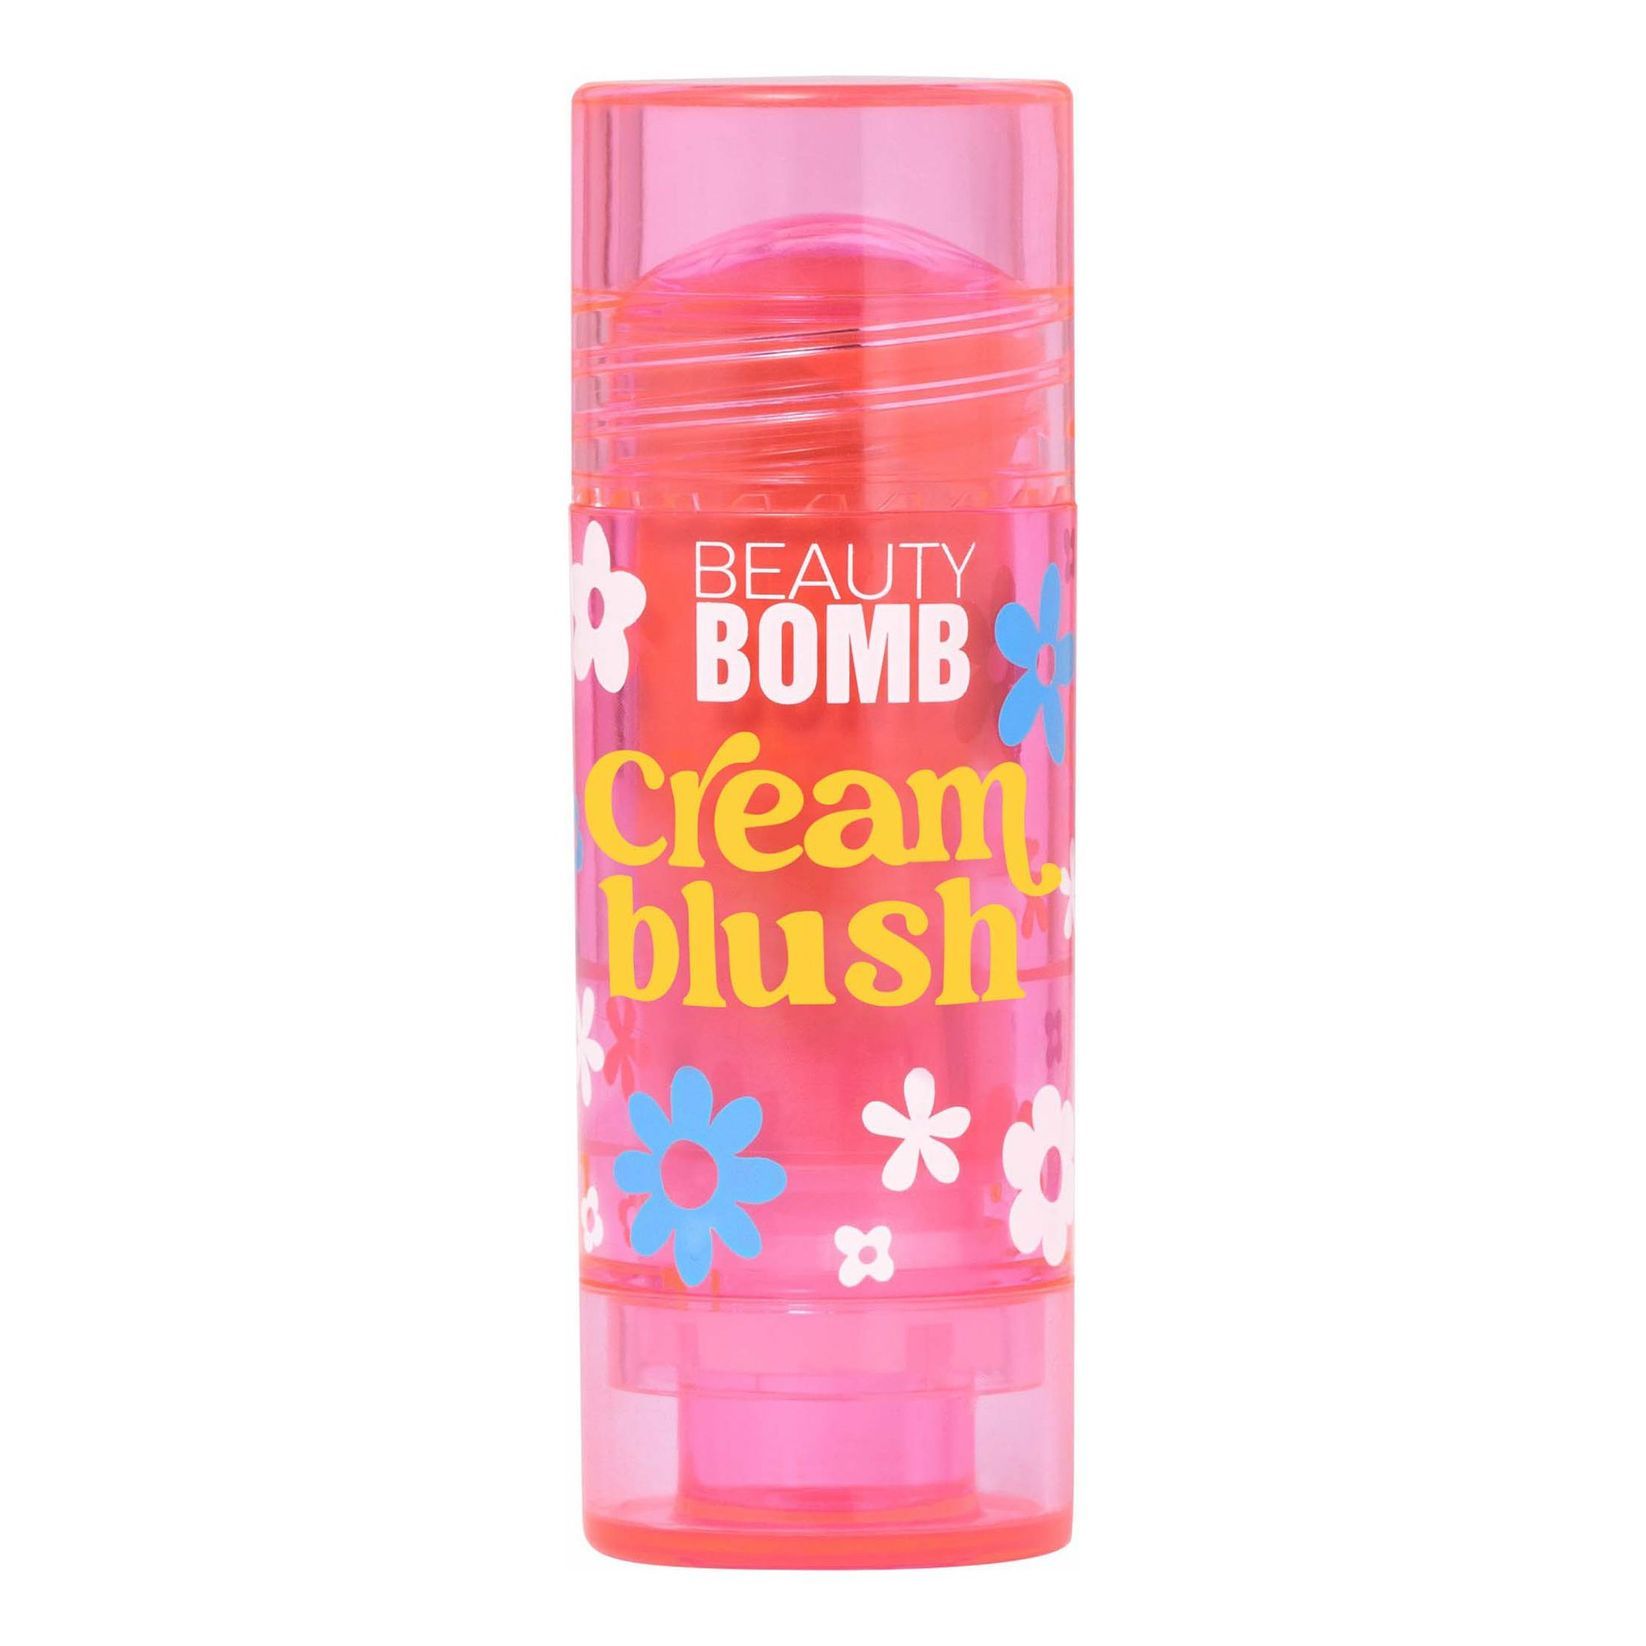 Кремовая бомба. Beauty Bomb румяна кремовые Cream blush. Румяна Beauty Bomb Cream blush 01. Beauty Bomb Cream blush 02. Beauty Bomb кремовые румяна в стике.